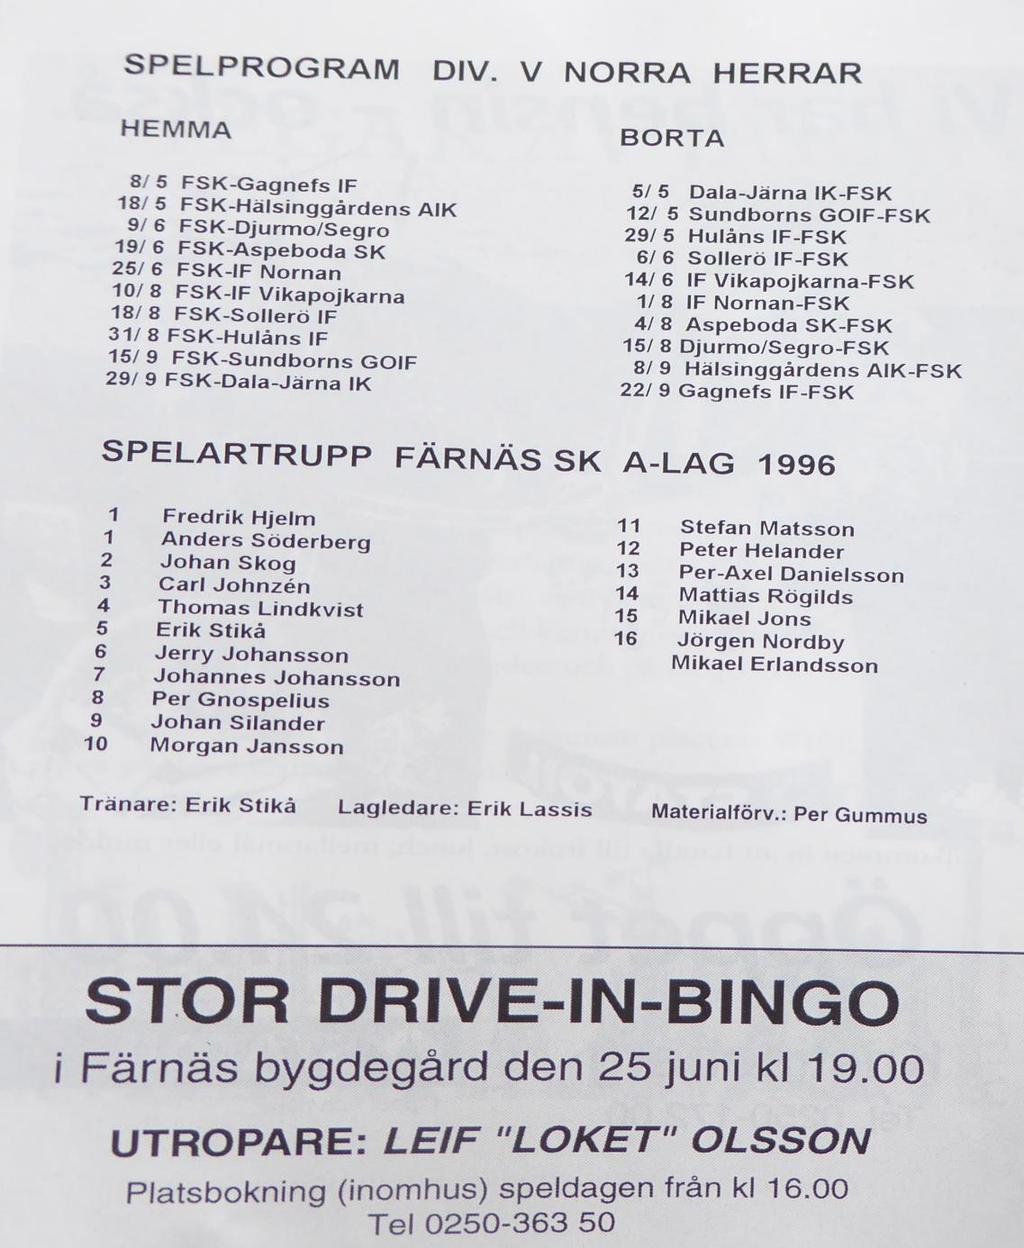 Premiär division IV, norra. Dala Järna-Färnäs 8-1, (4-0). Dala Järna hade ett riktigt målkalas mot Färnäs. Stackars Färnäs fick se sig besegrade med hela 8-1.